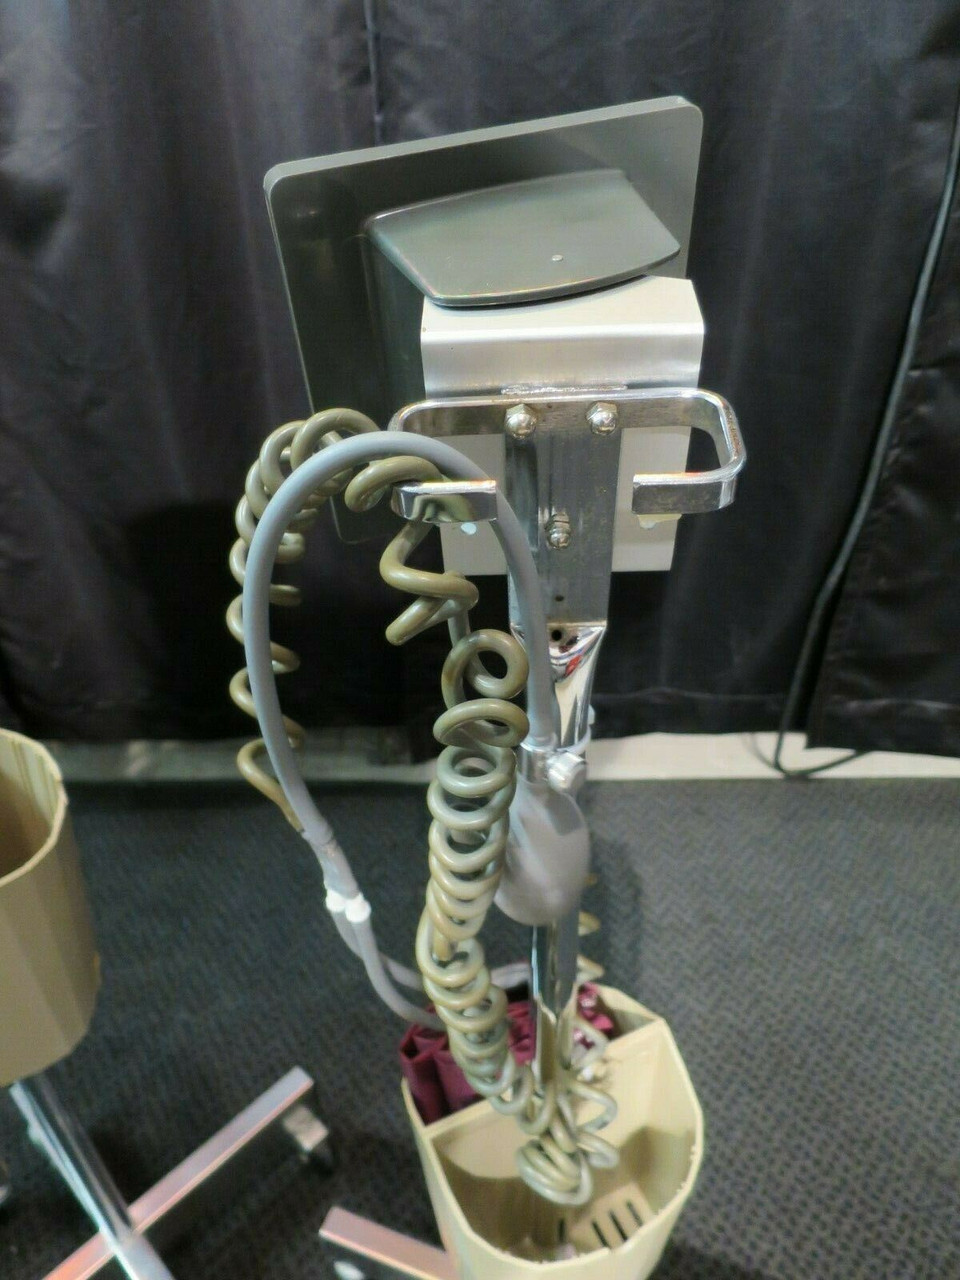 BP Gauge Mobile Stands Tycos Jewel Movement Sphygmomanometer Set of 3